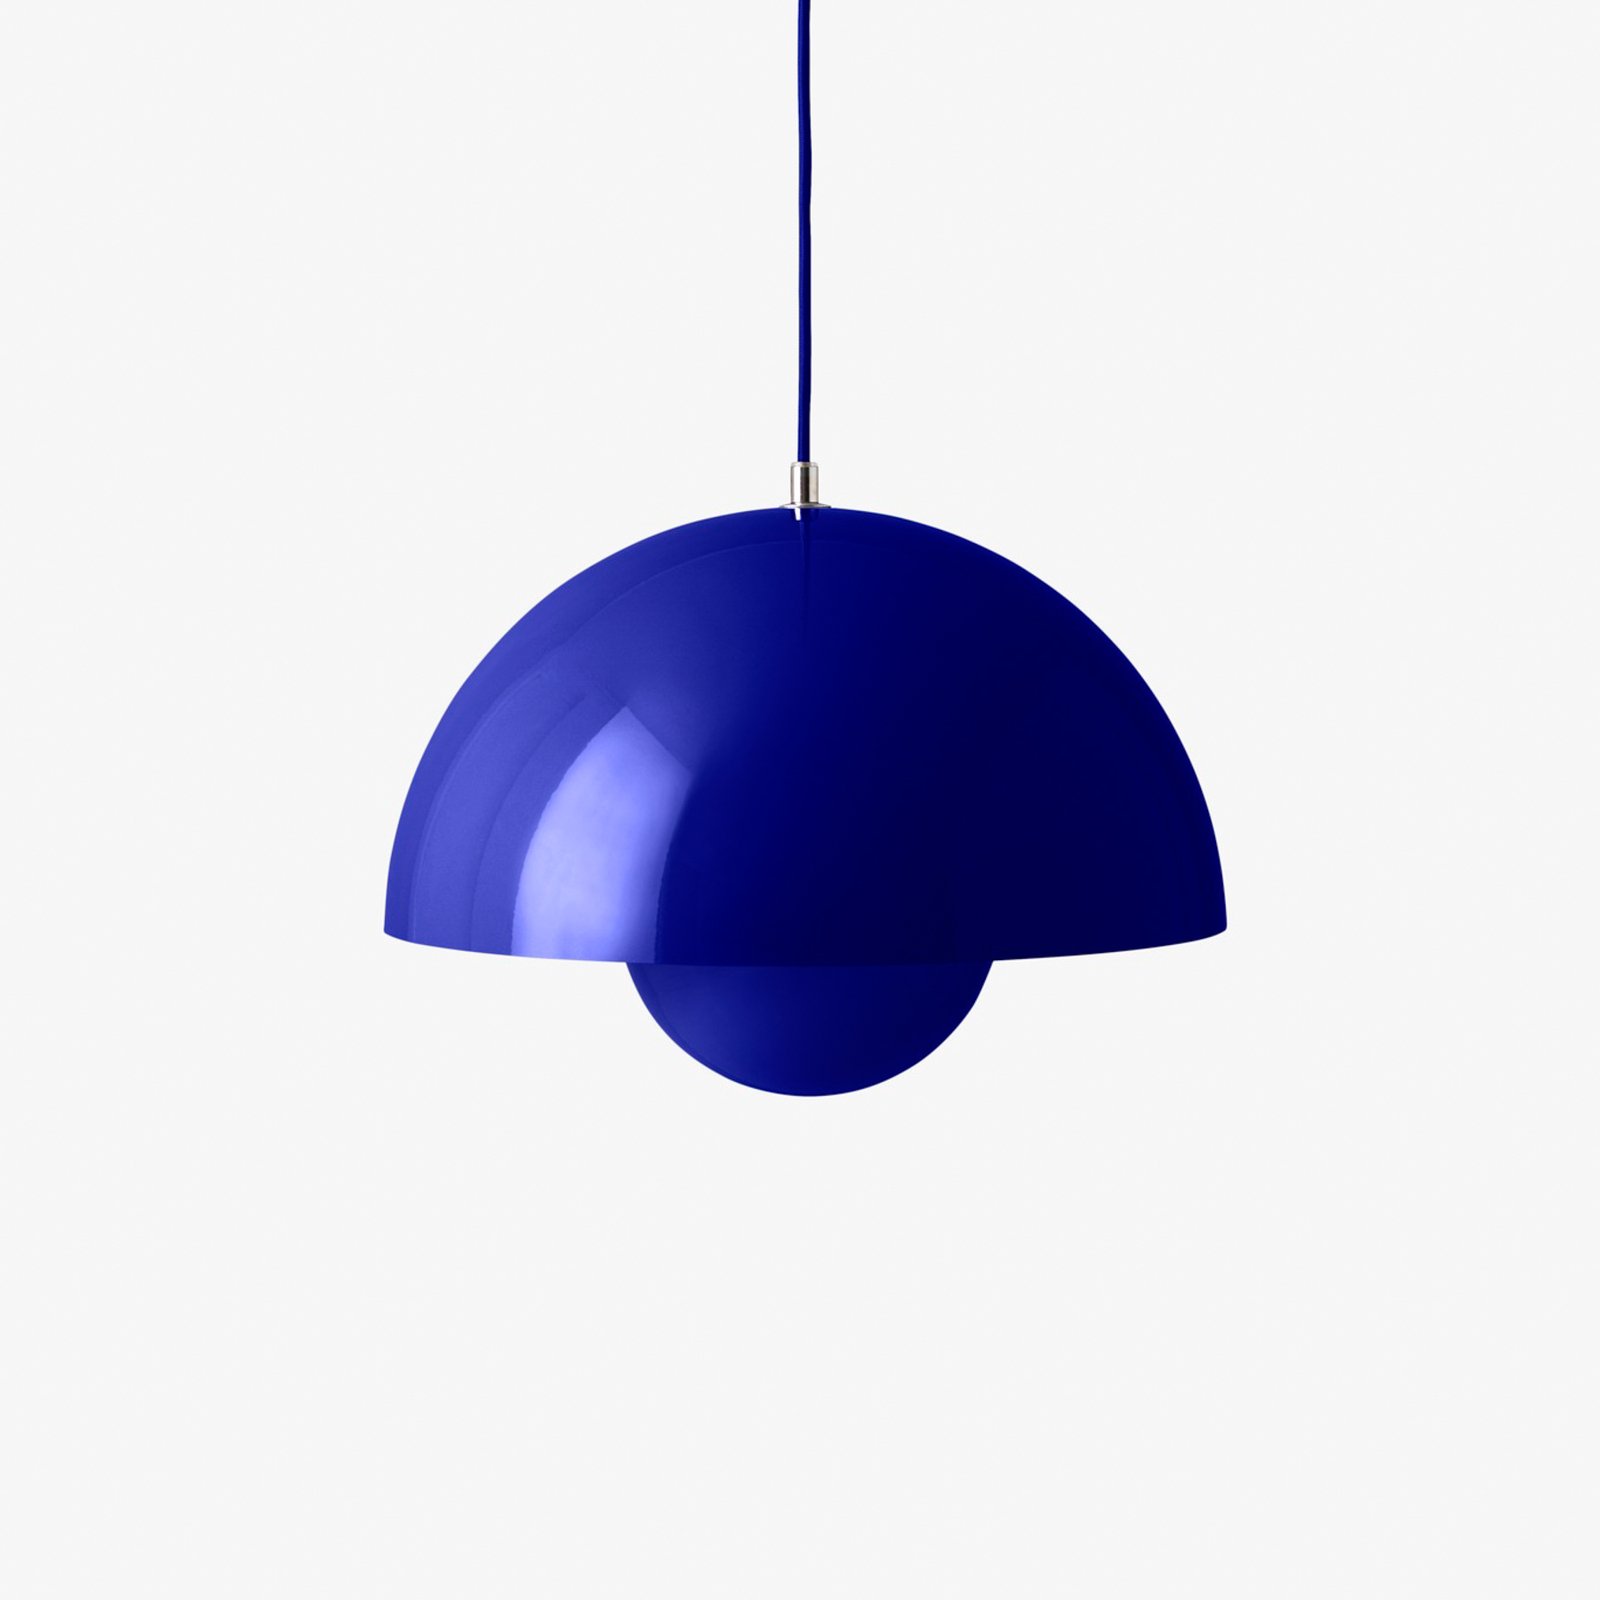 &Tradycyjna lampa wisząca Flowerpot VP7, Ø 37 cm, kobaltowy niebieski